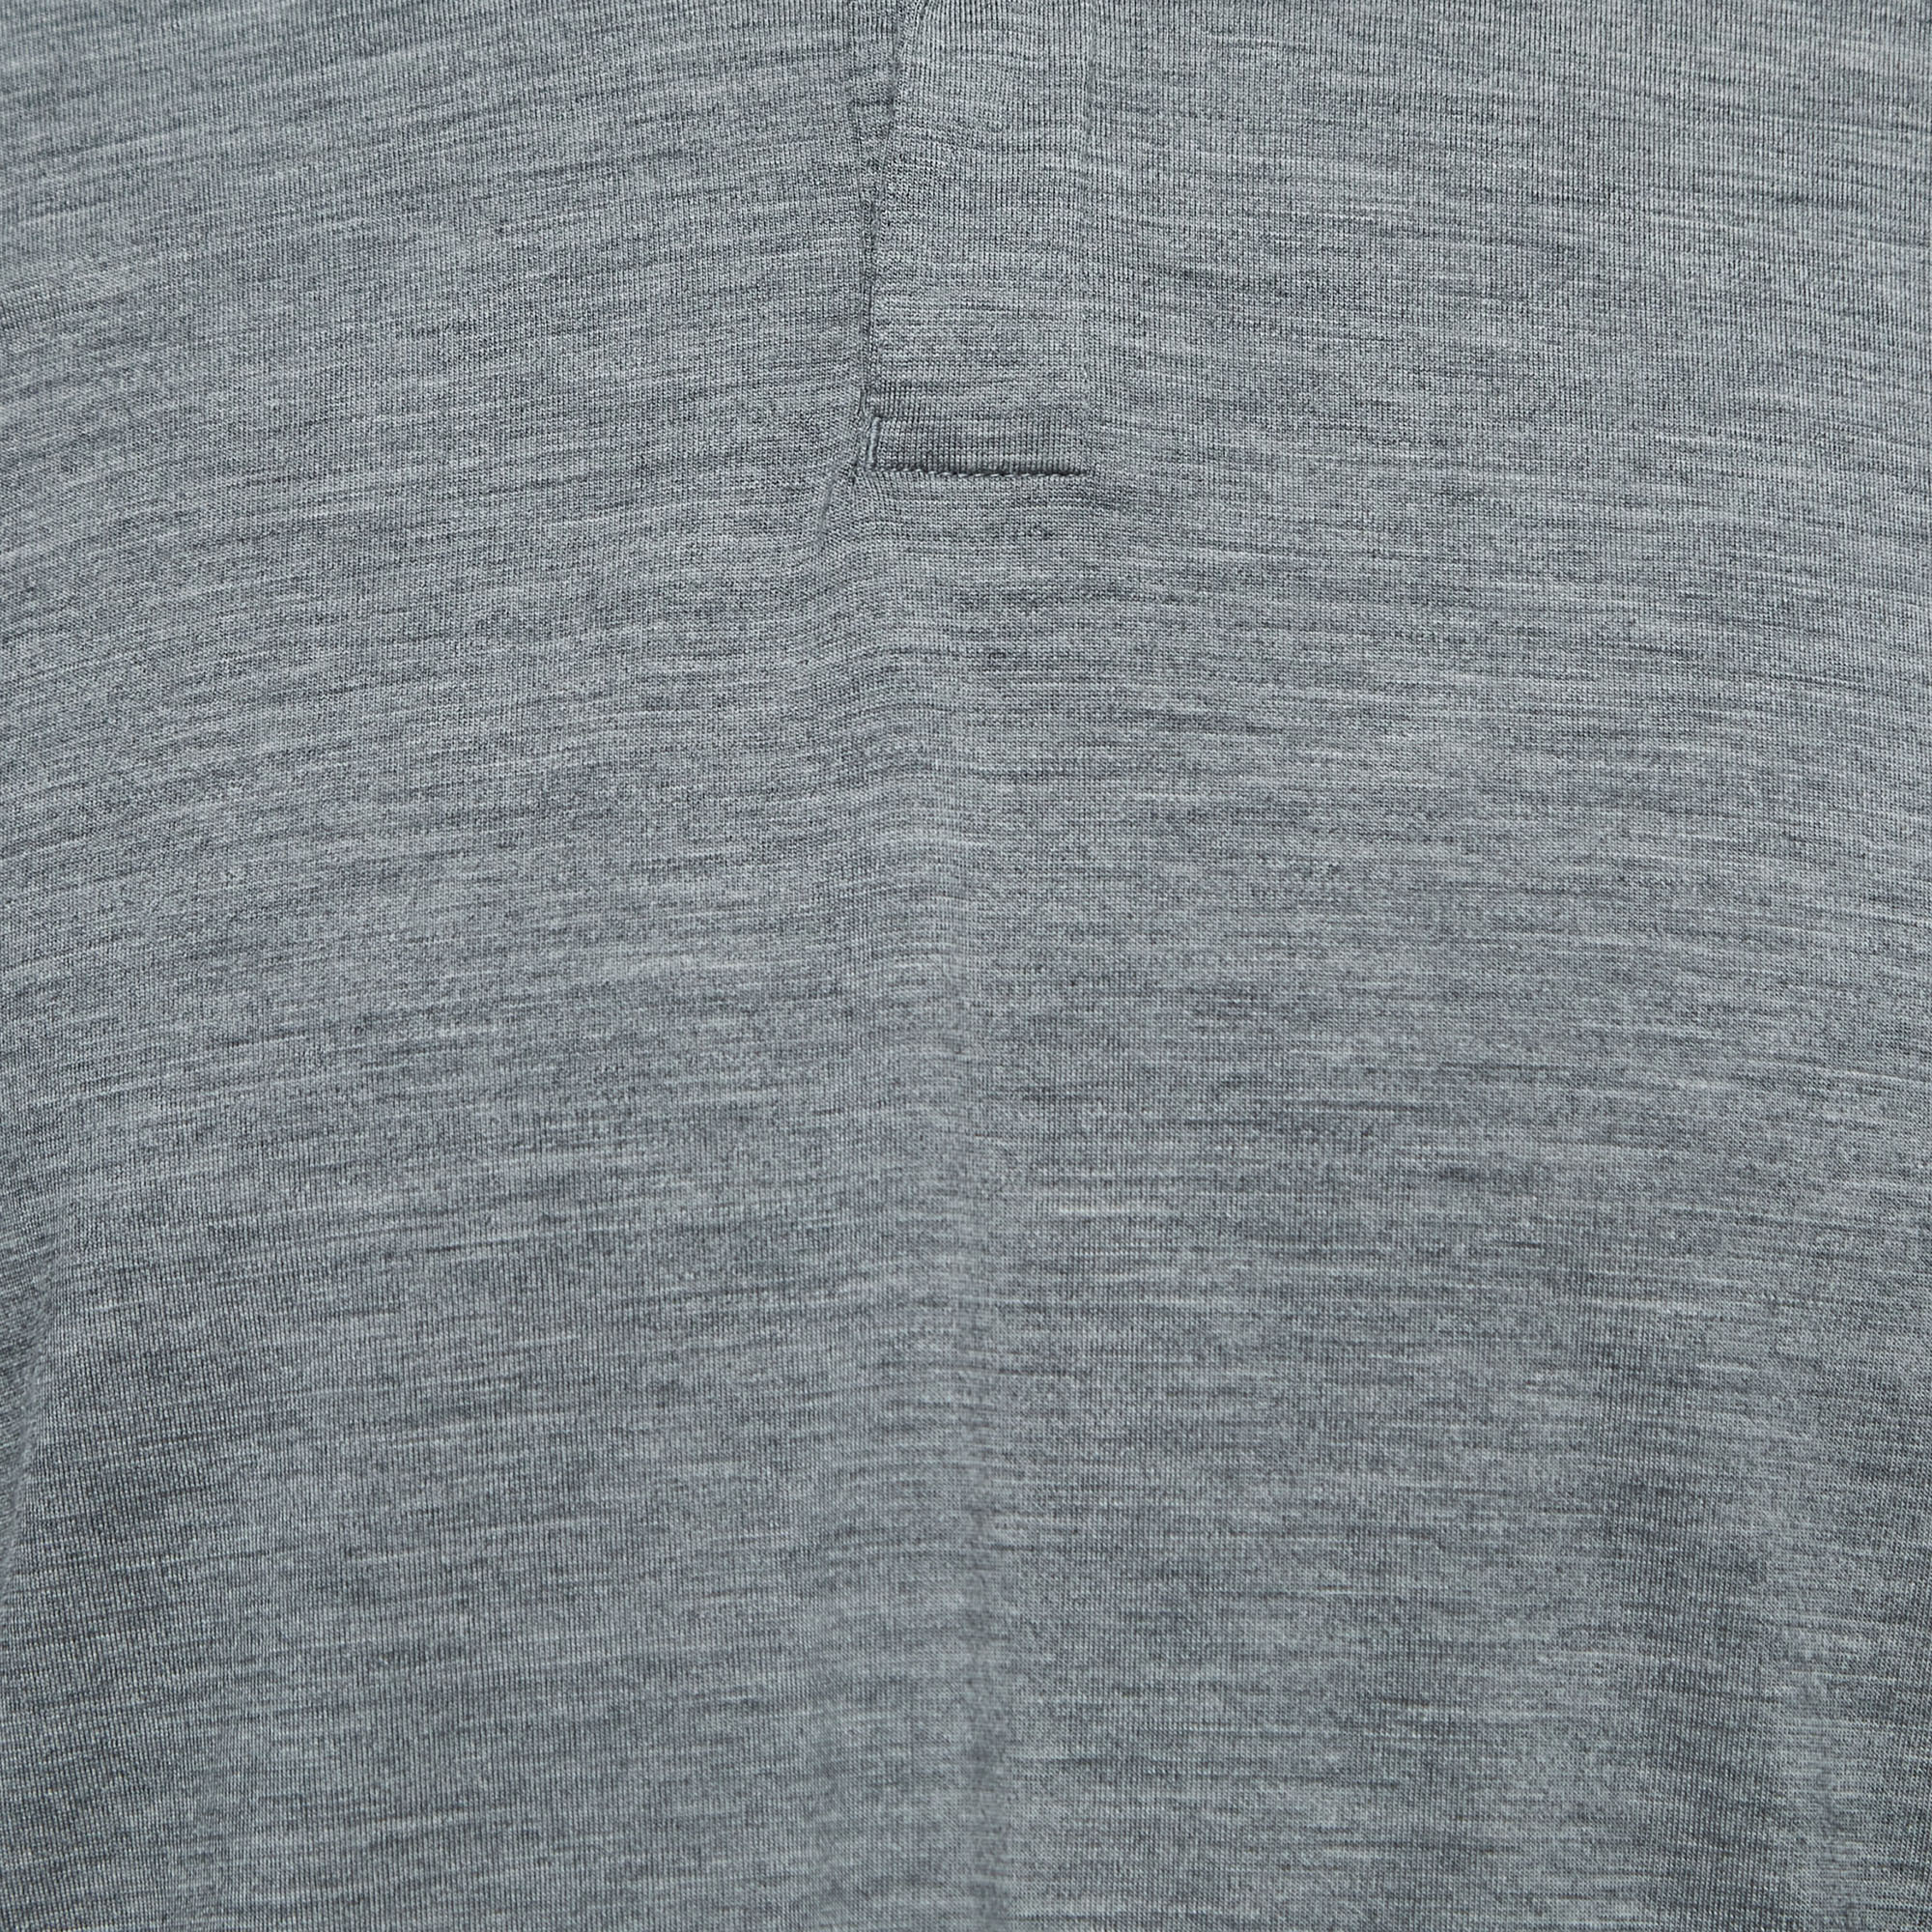 Z Zegna Techmerino Grey Jersey Polo T-Shirt L